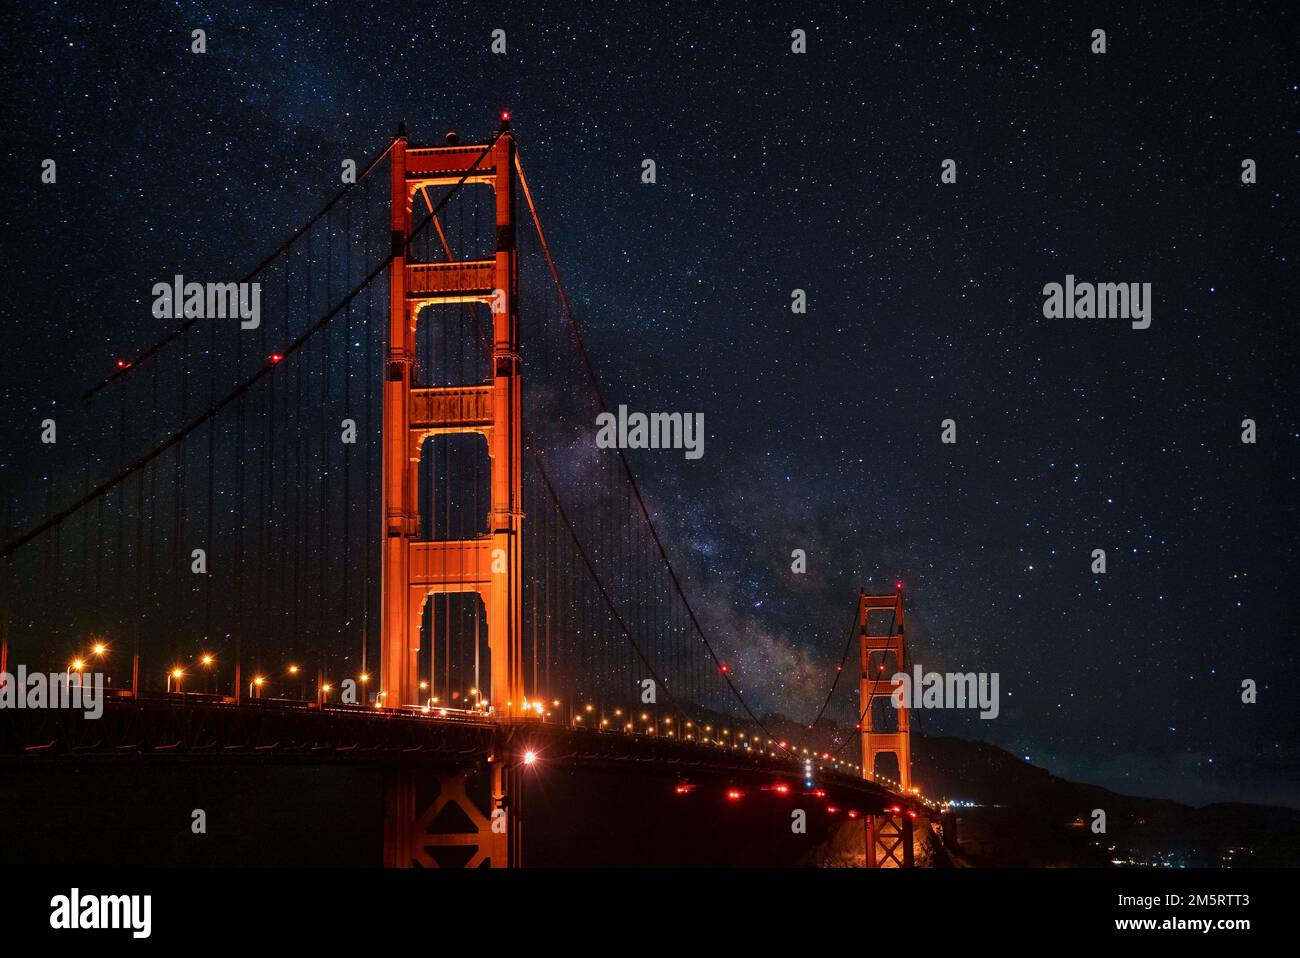 Beleuchtete Golden Gate Hängebrücke unter einem wunderschönen Sternenfeld bei Nacht Stockfoto